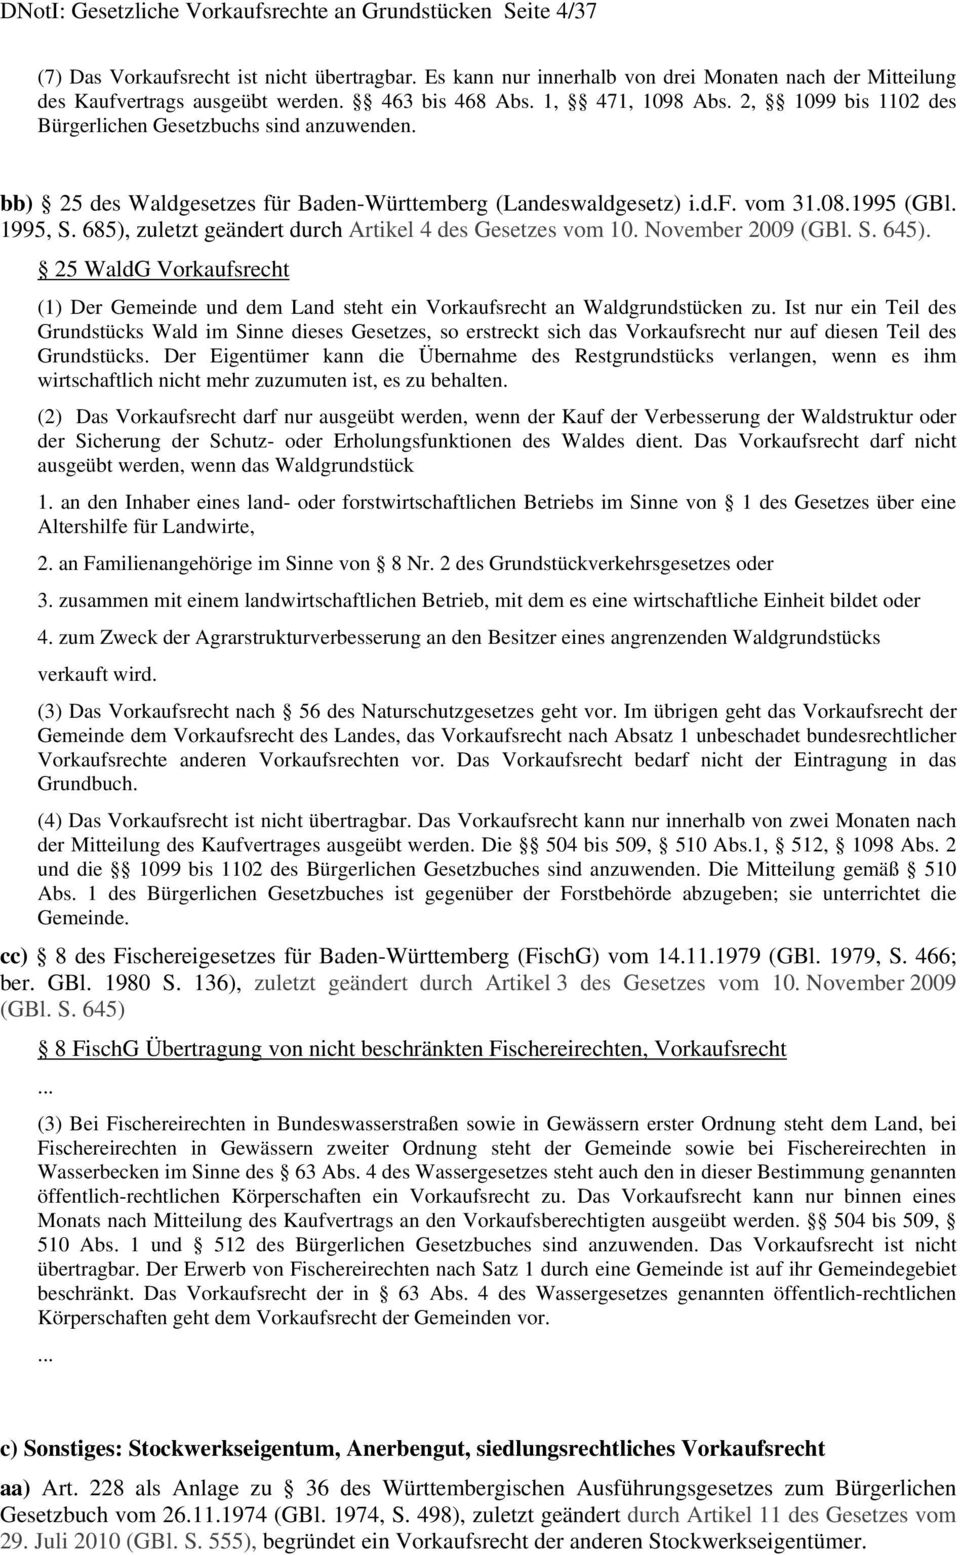 bb) 25 des Waldgesetzes für Baden-Württemberg (Landeswaldgesetz) i.d.f. vom 31.08.1995 (GBl. 1995, S. 685), zuletzt geändert durch Artikel 4 des Gesetzes vom 10. November 2009 (GBl. S. 645).